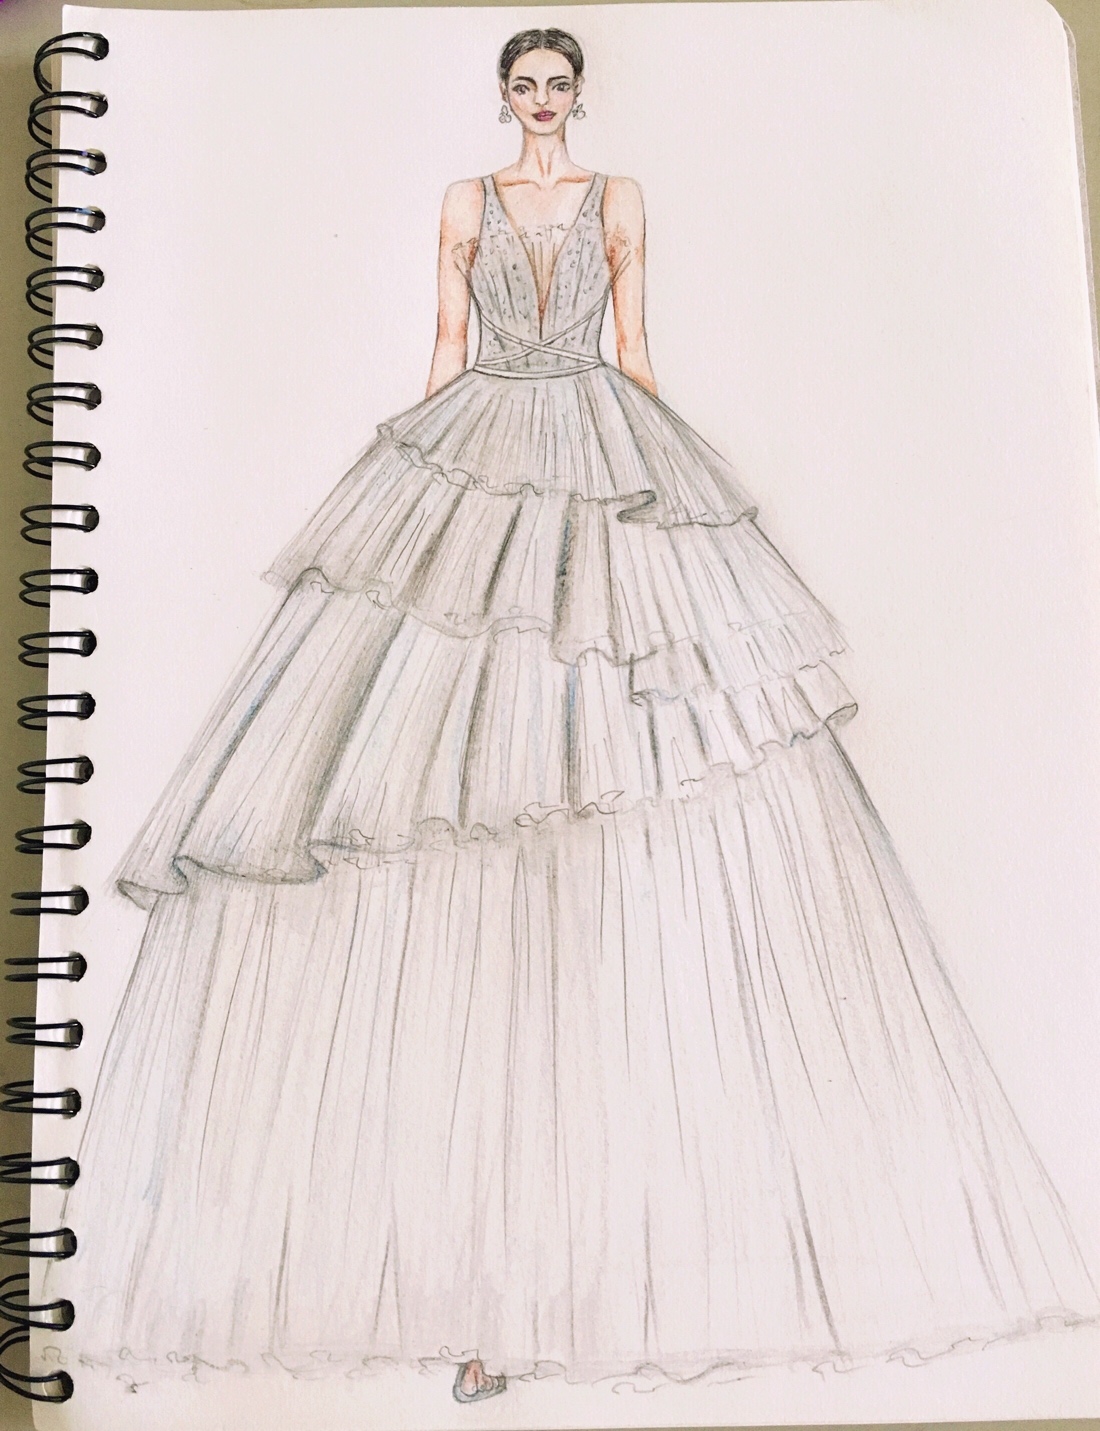 彩铅手绘仙女裙-服装画/服装设计手稿 - 穿针引线服装